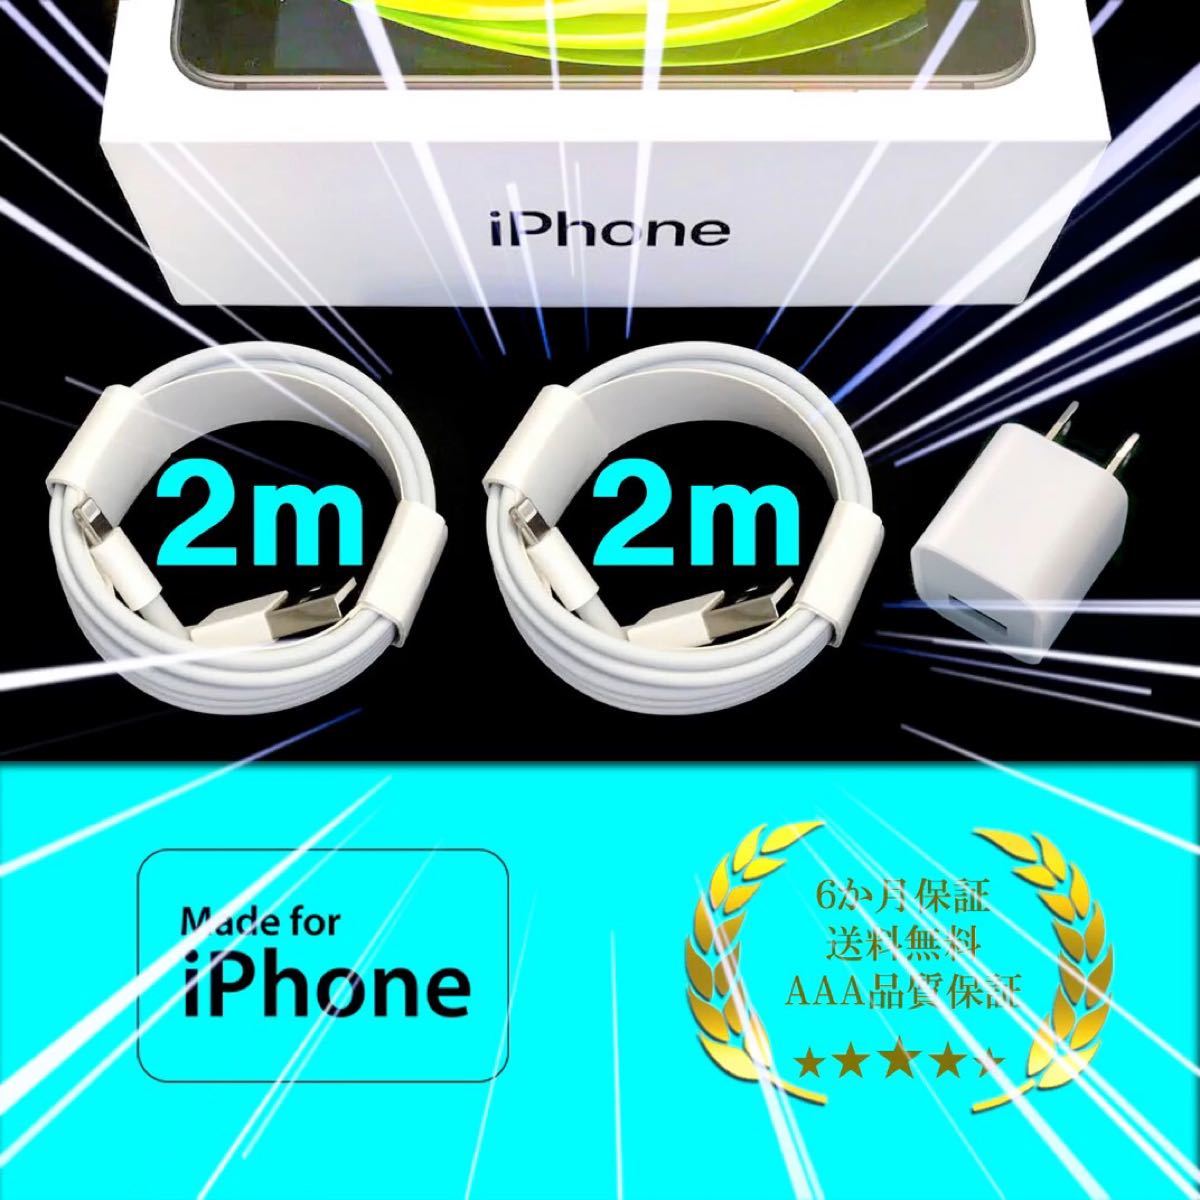 iPhone コンセント アダプタ 電源 充電器 充電ケーブル コード lightning cable ライトニングケーブル